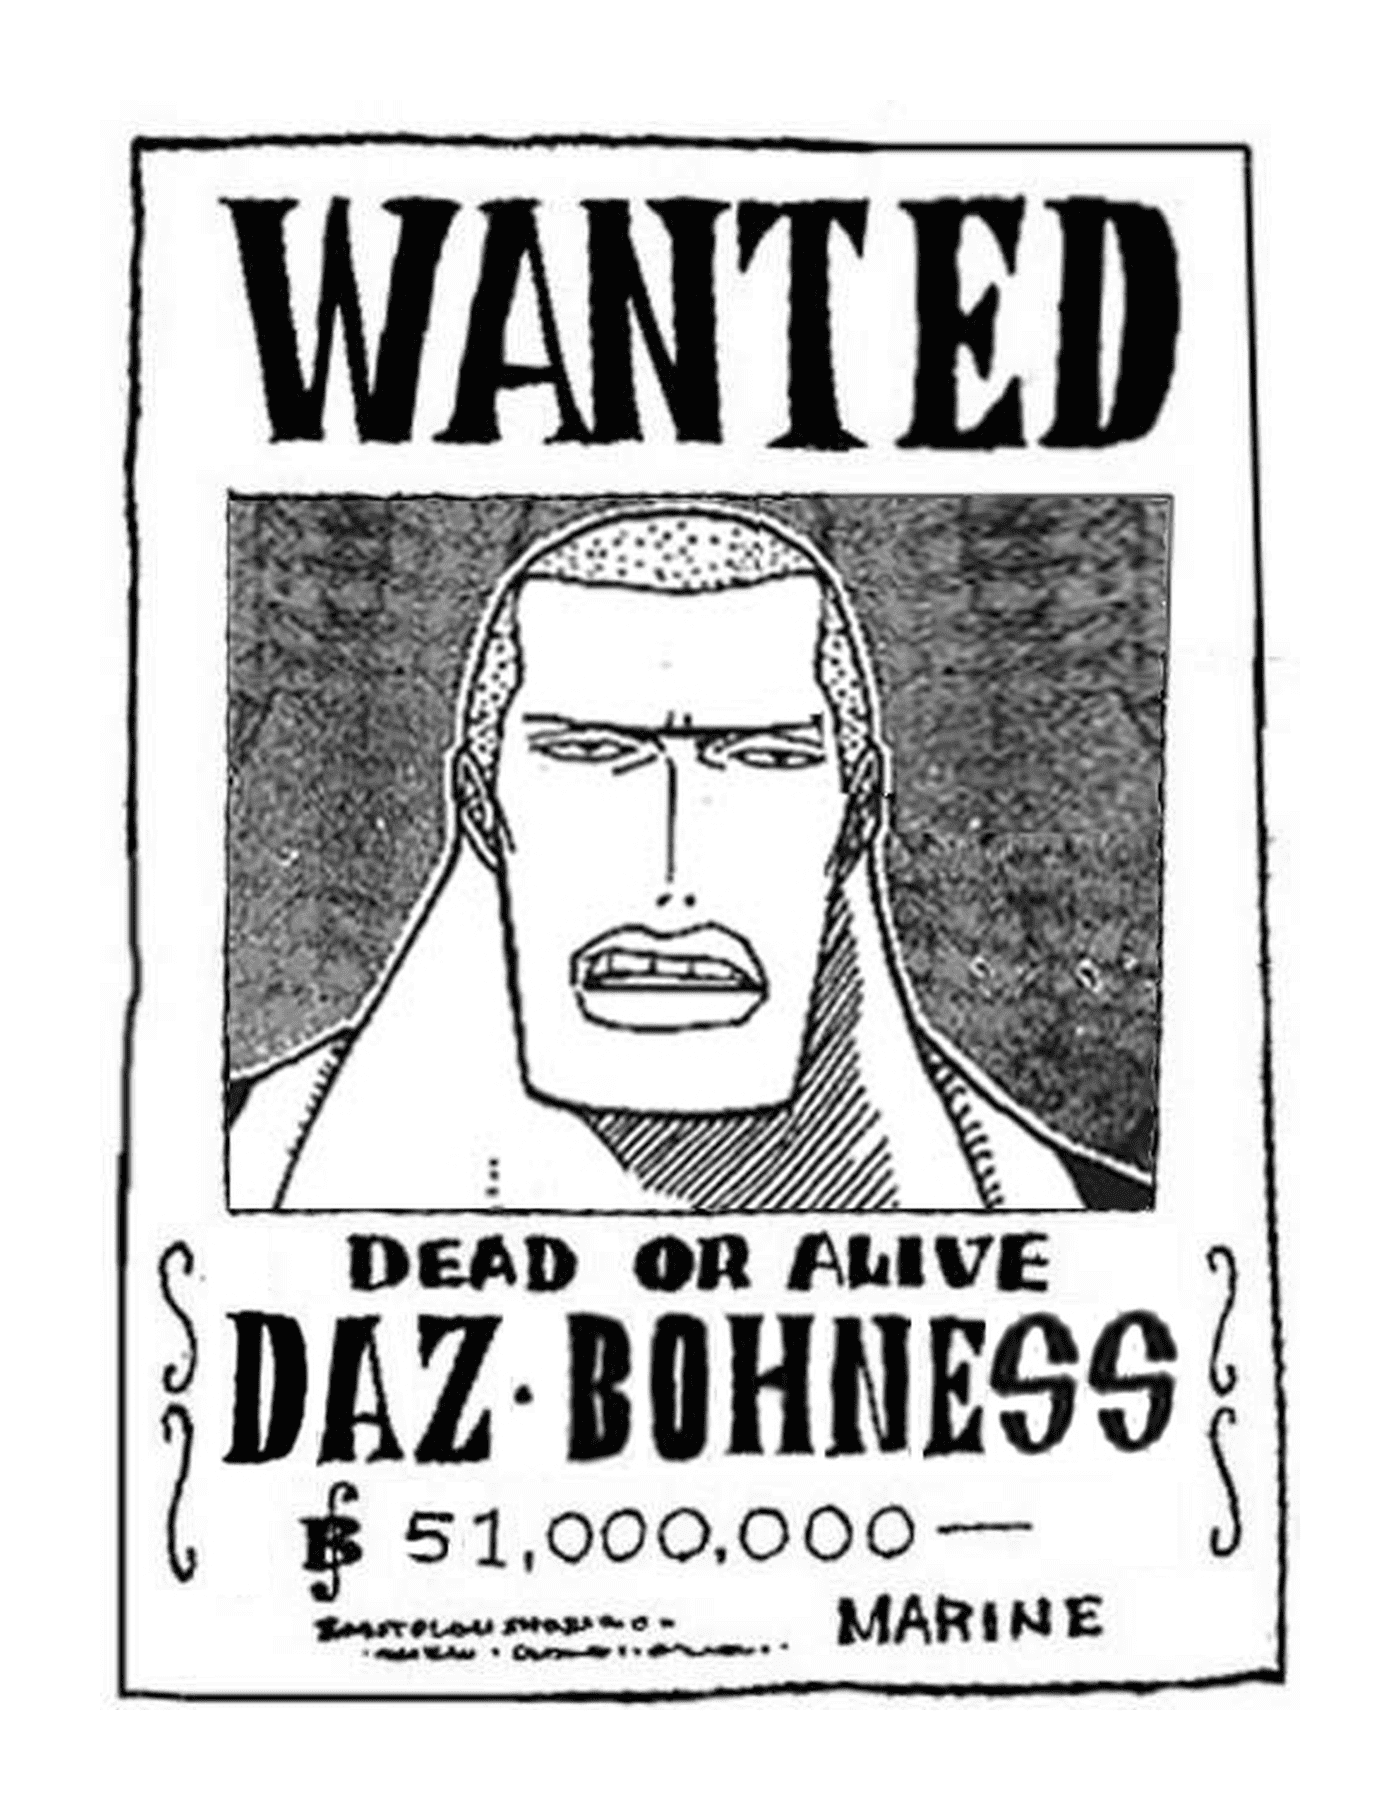   Wanted Daz Bohness, mort ou vif 